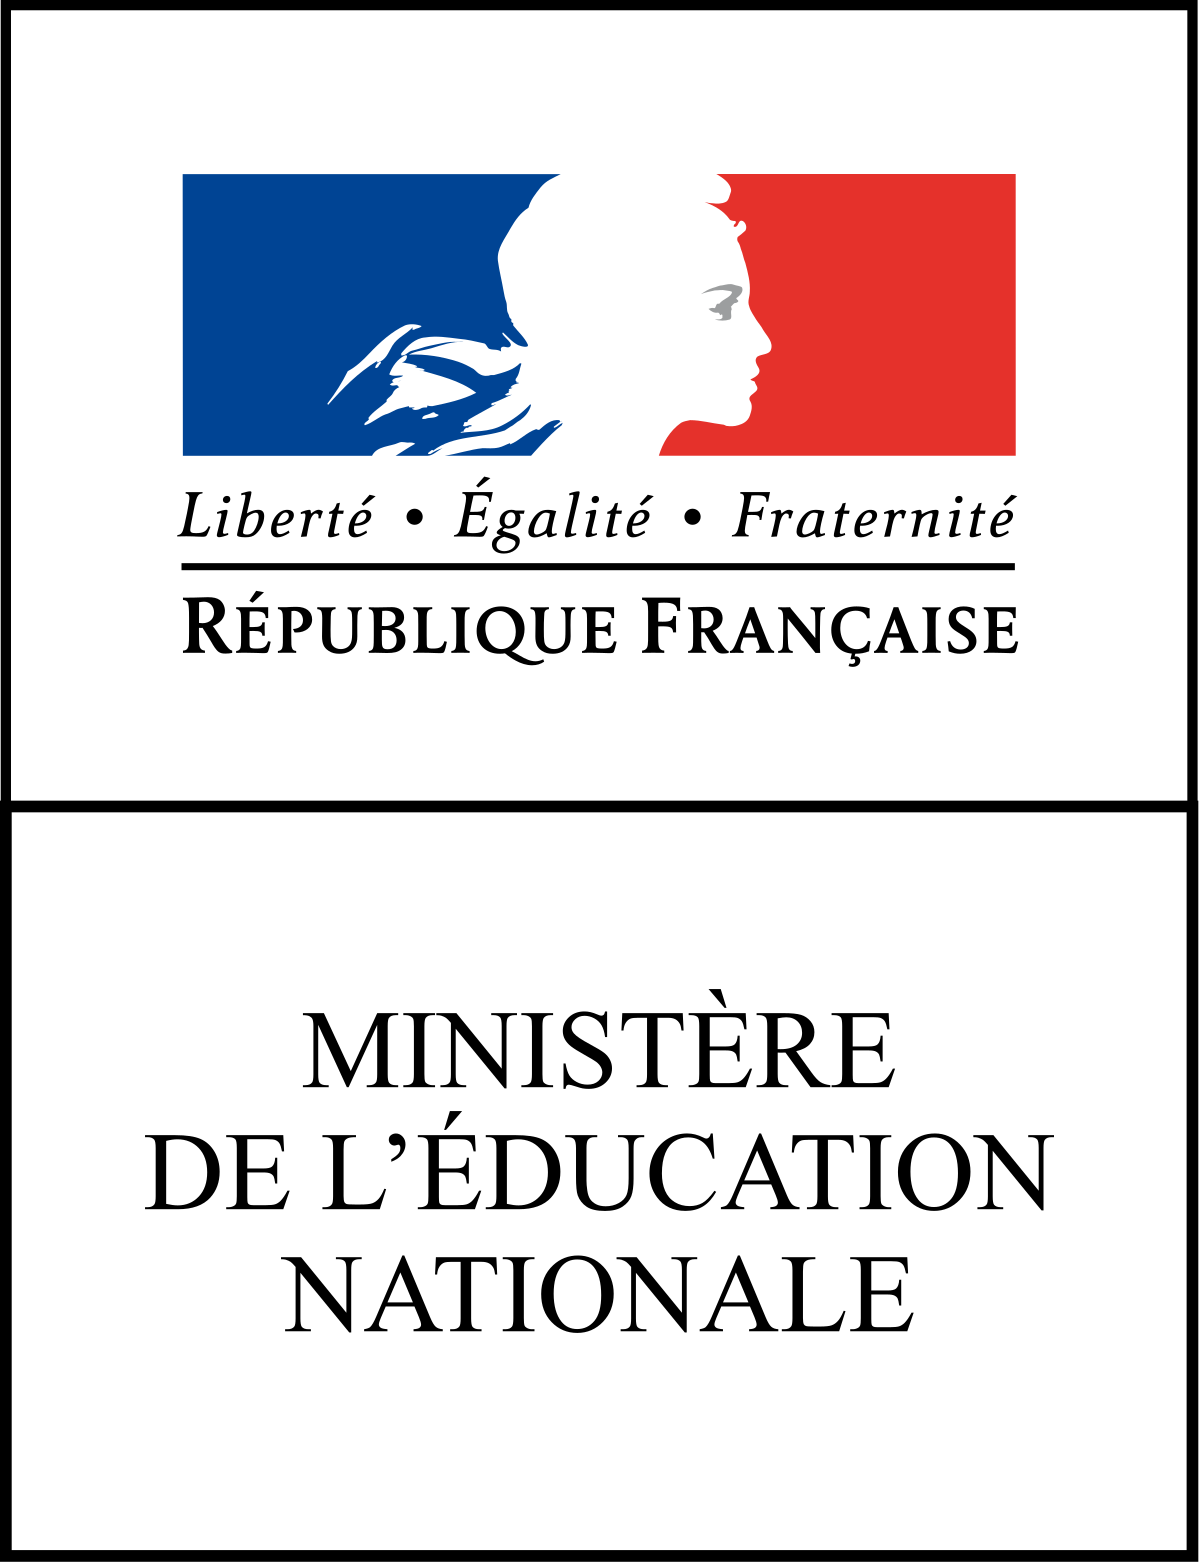 Ministère education nationale